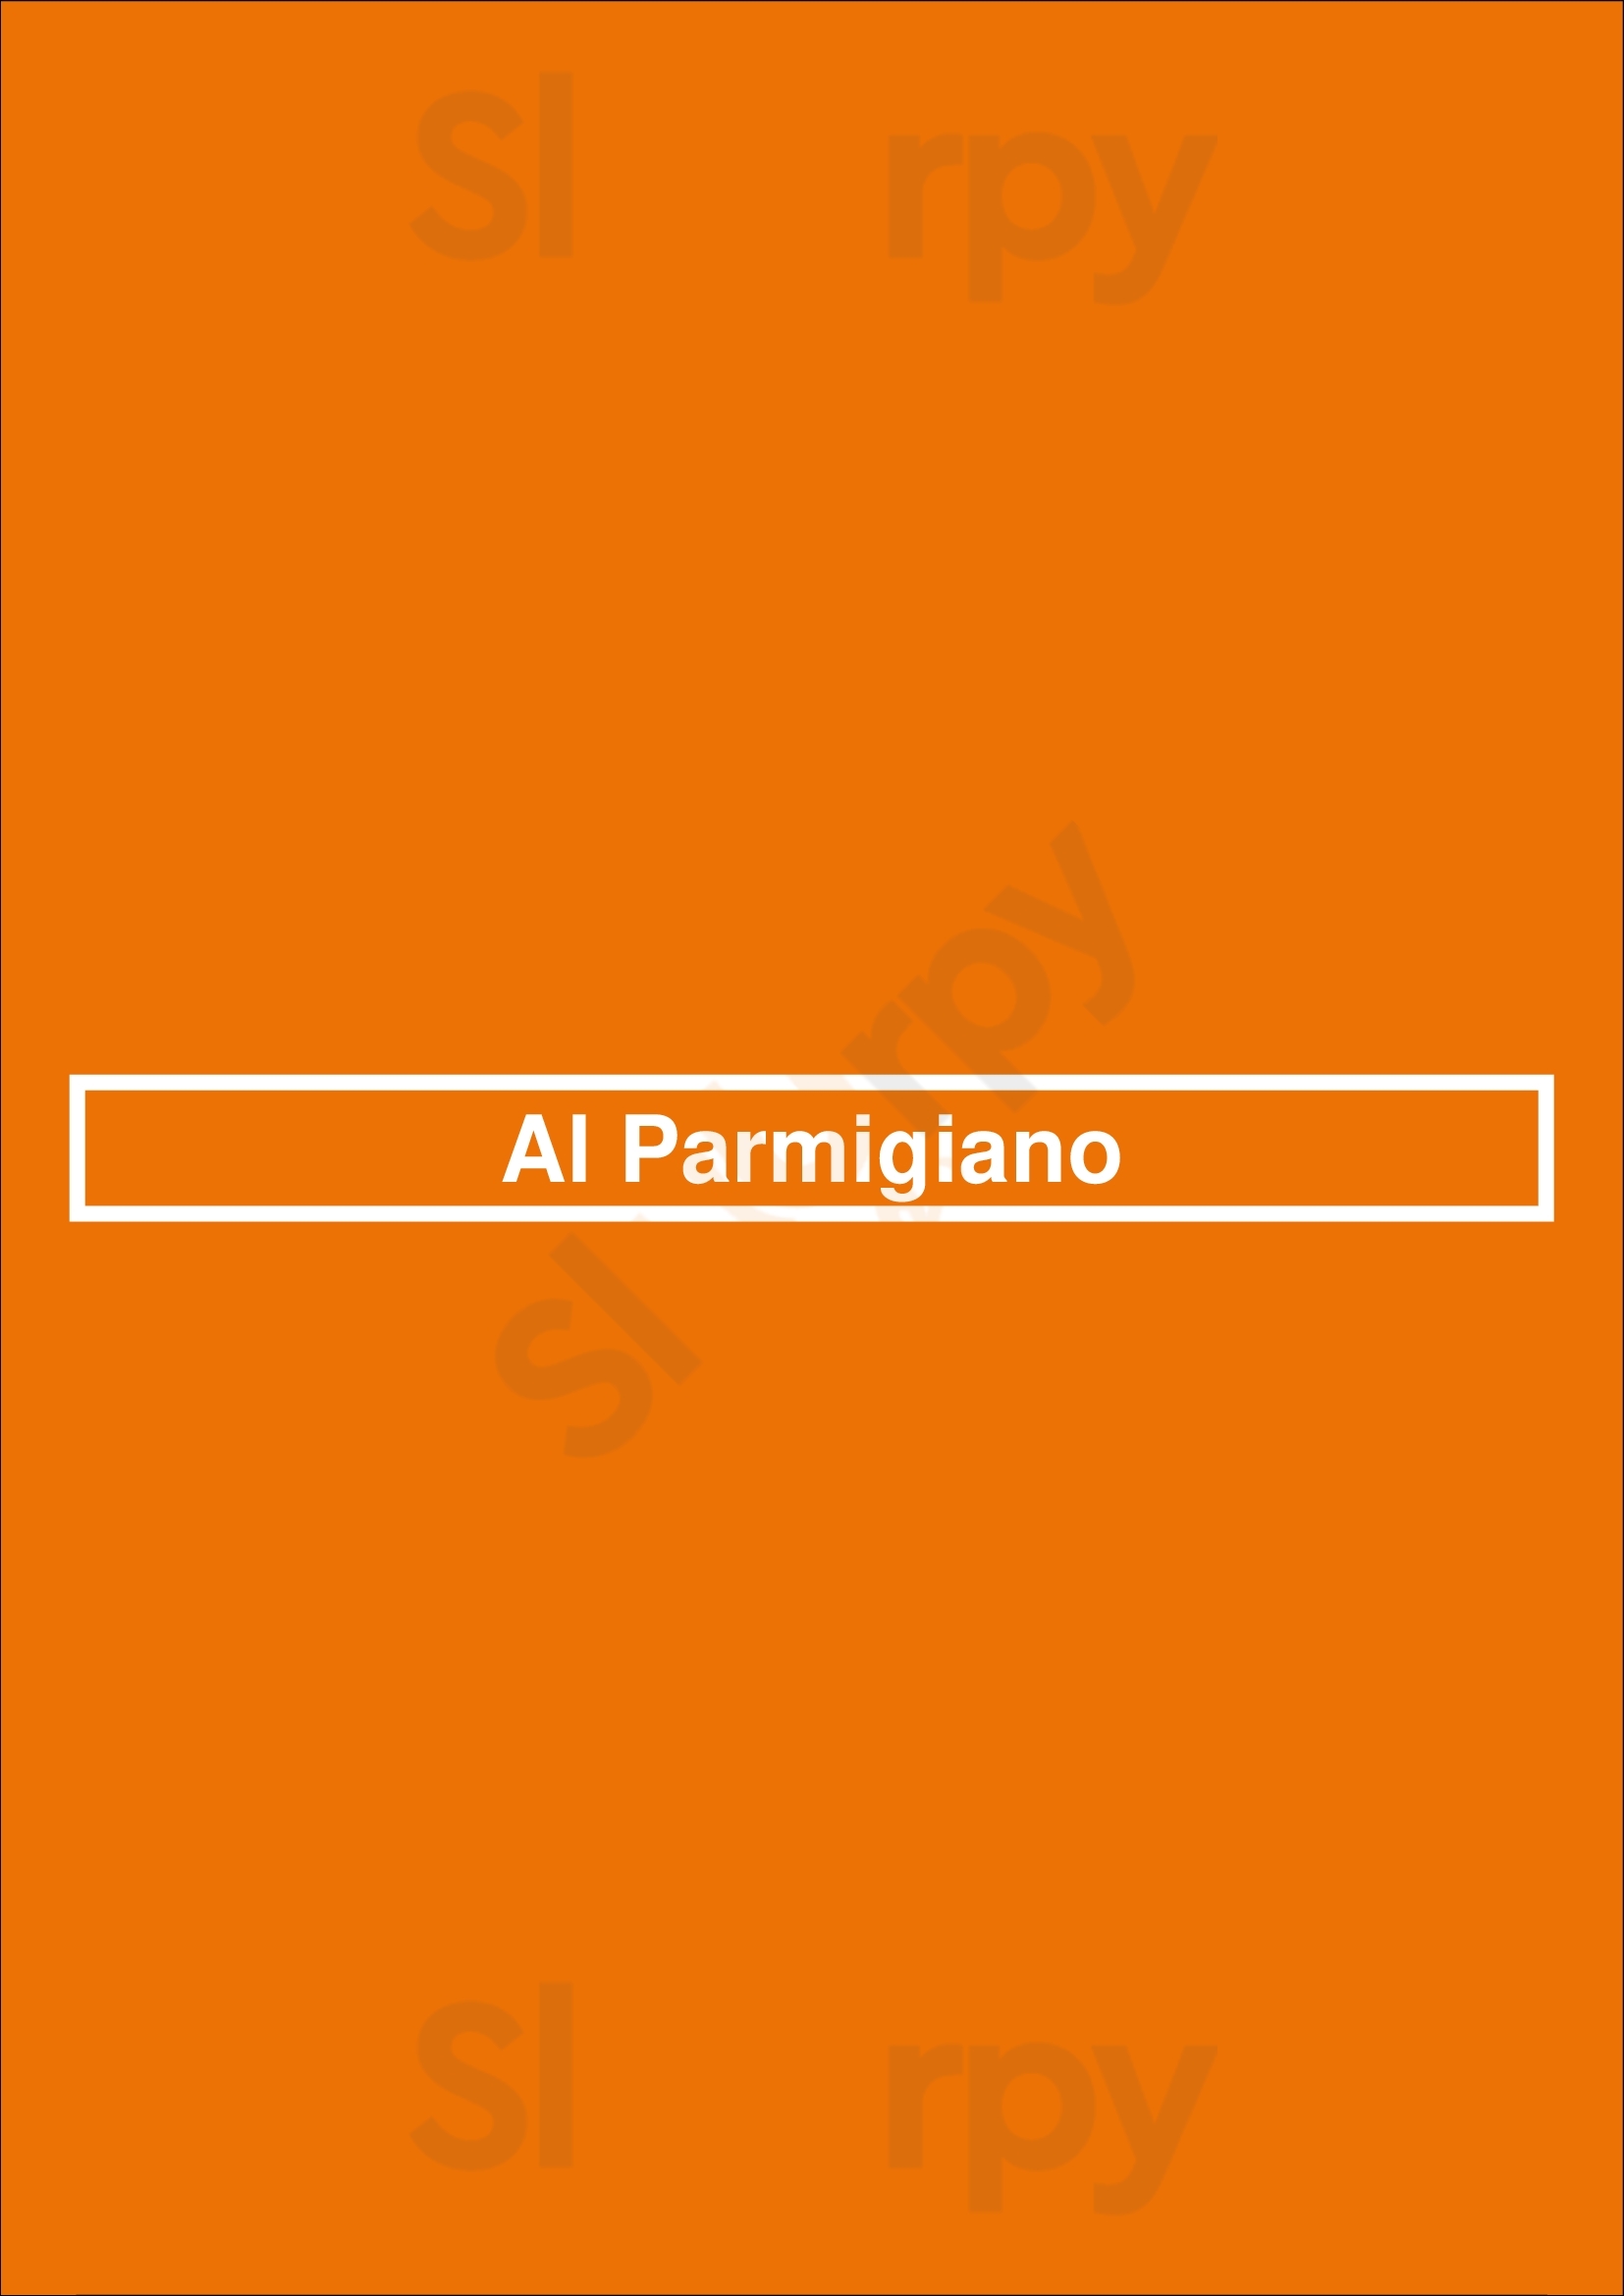 Al Parmigiano Lisboa Menu - 1